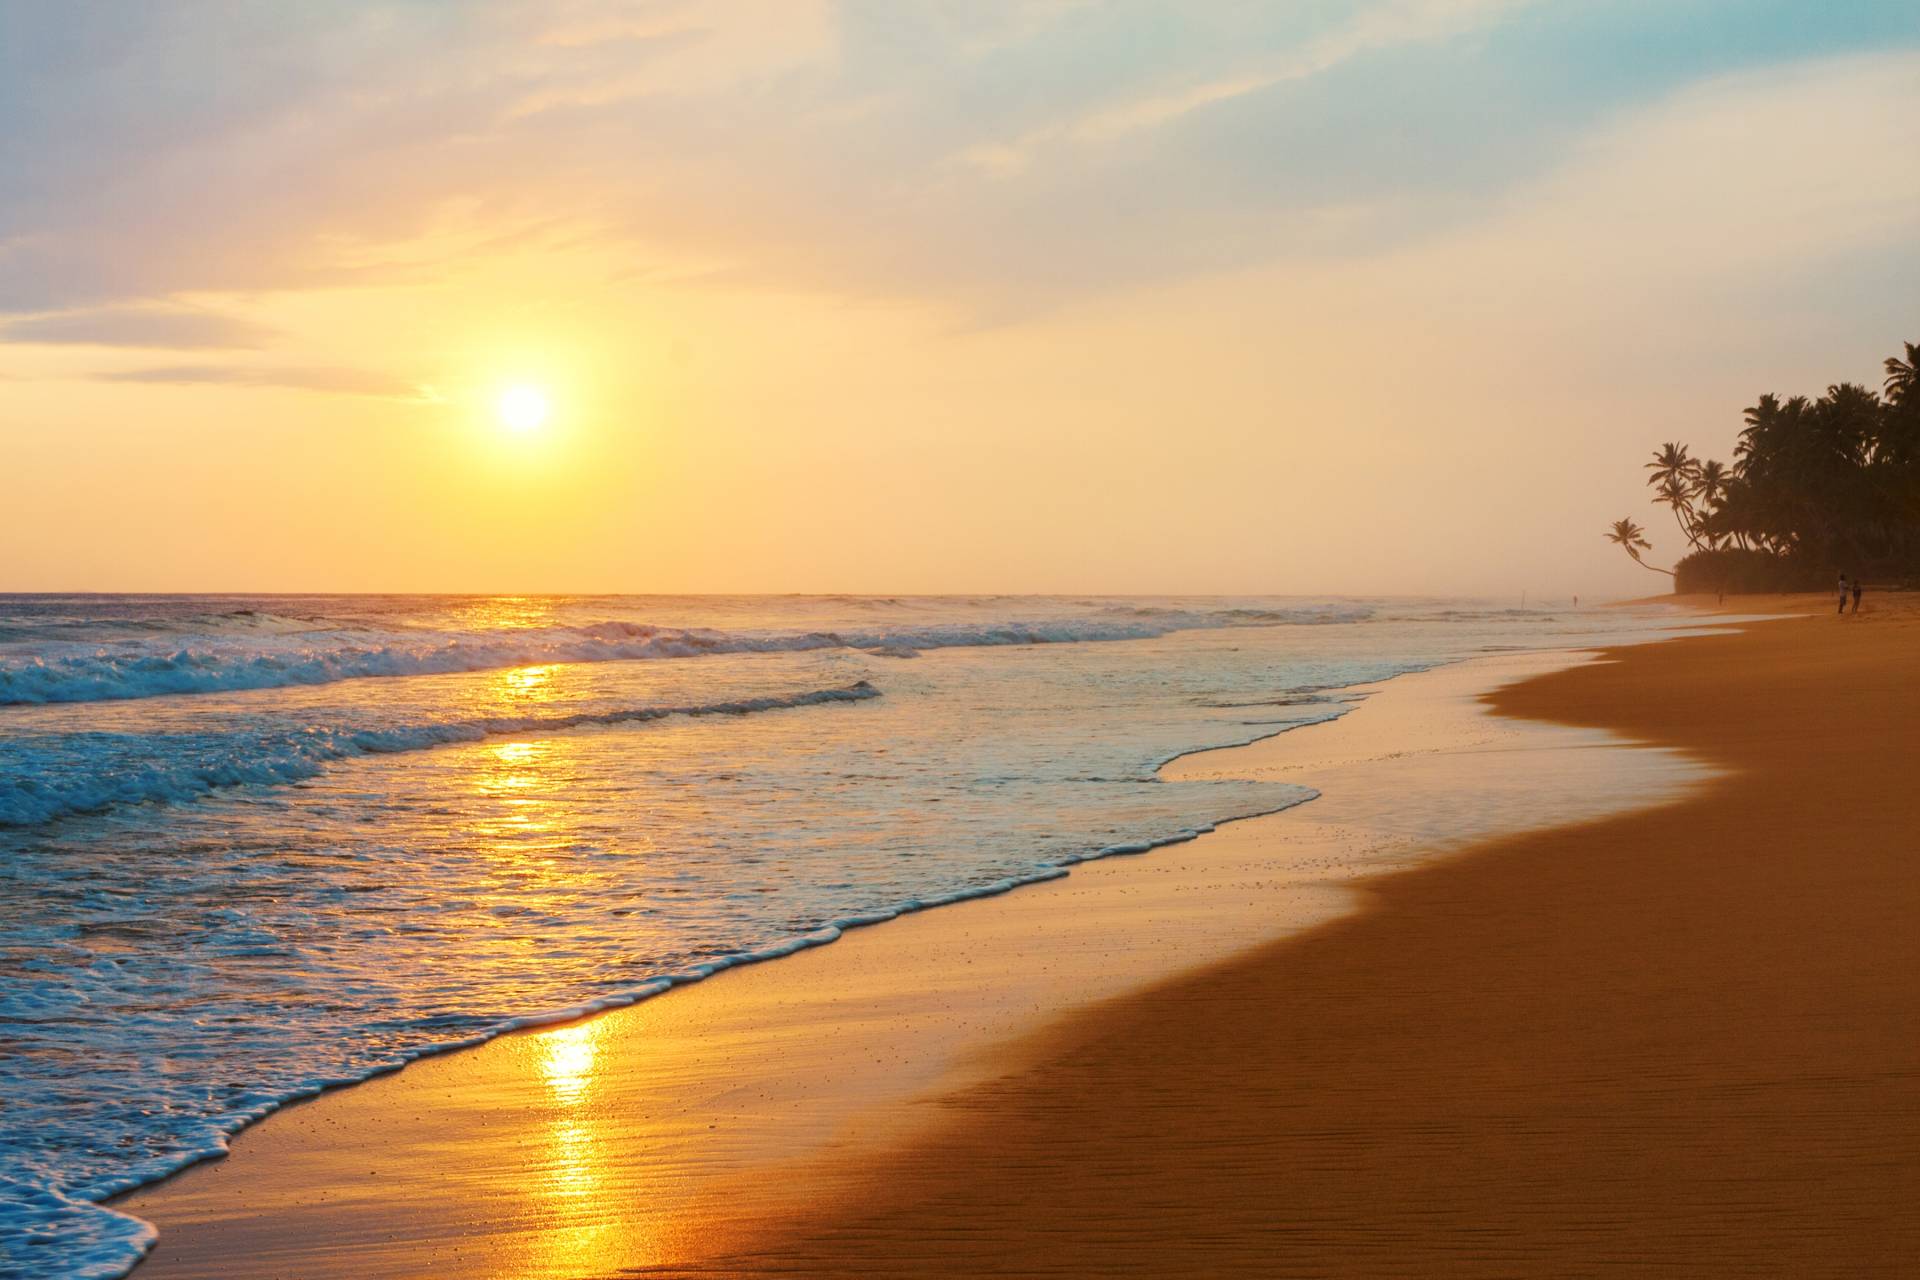 Papermoon Fototapete "Sri Lanka Beach Sunset" von Papermoon